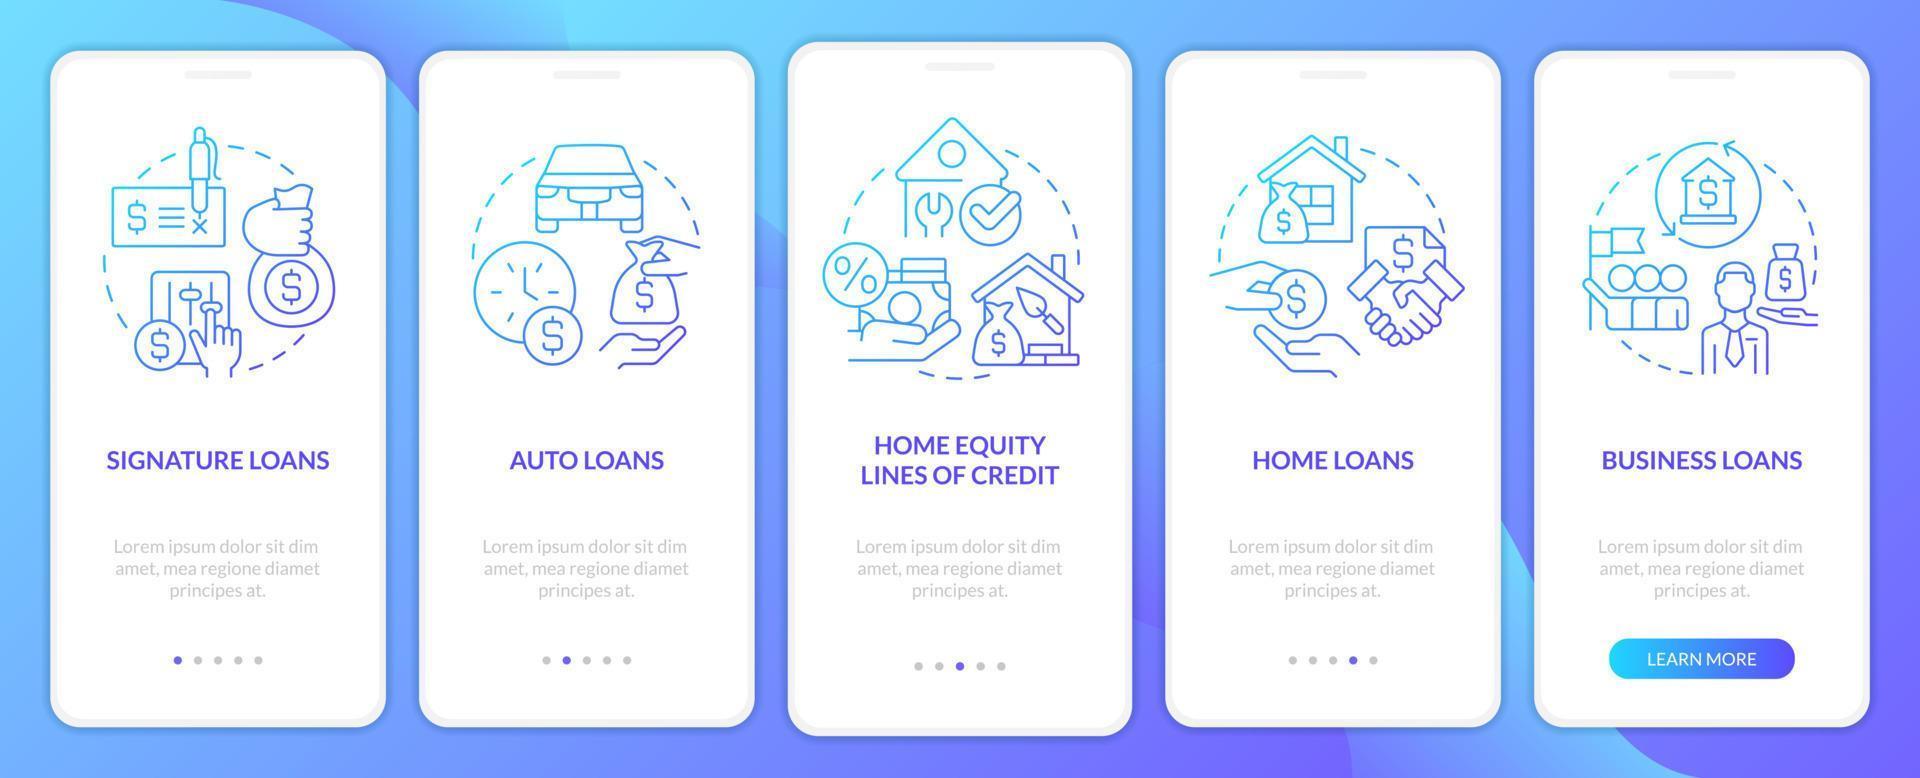 Kredittypen blauer Farbverlauf beim Onboarding auf dem Bildschirm der mobilen App. Banking Service Walkthrough 5 Schritte grafische Anweisungen mit linearen Konzepten. ui, ux, gui-Vorlage. vektor